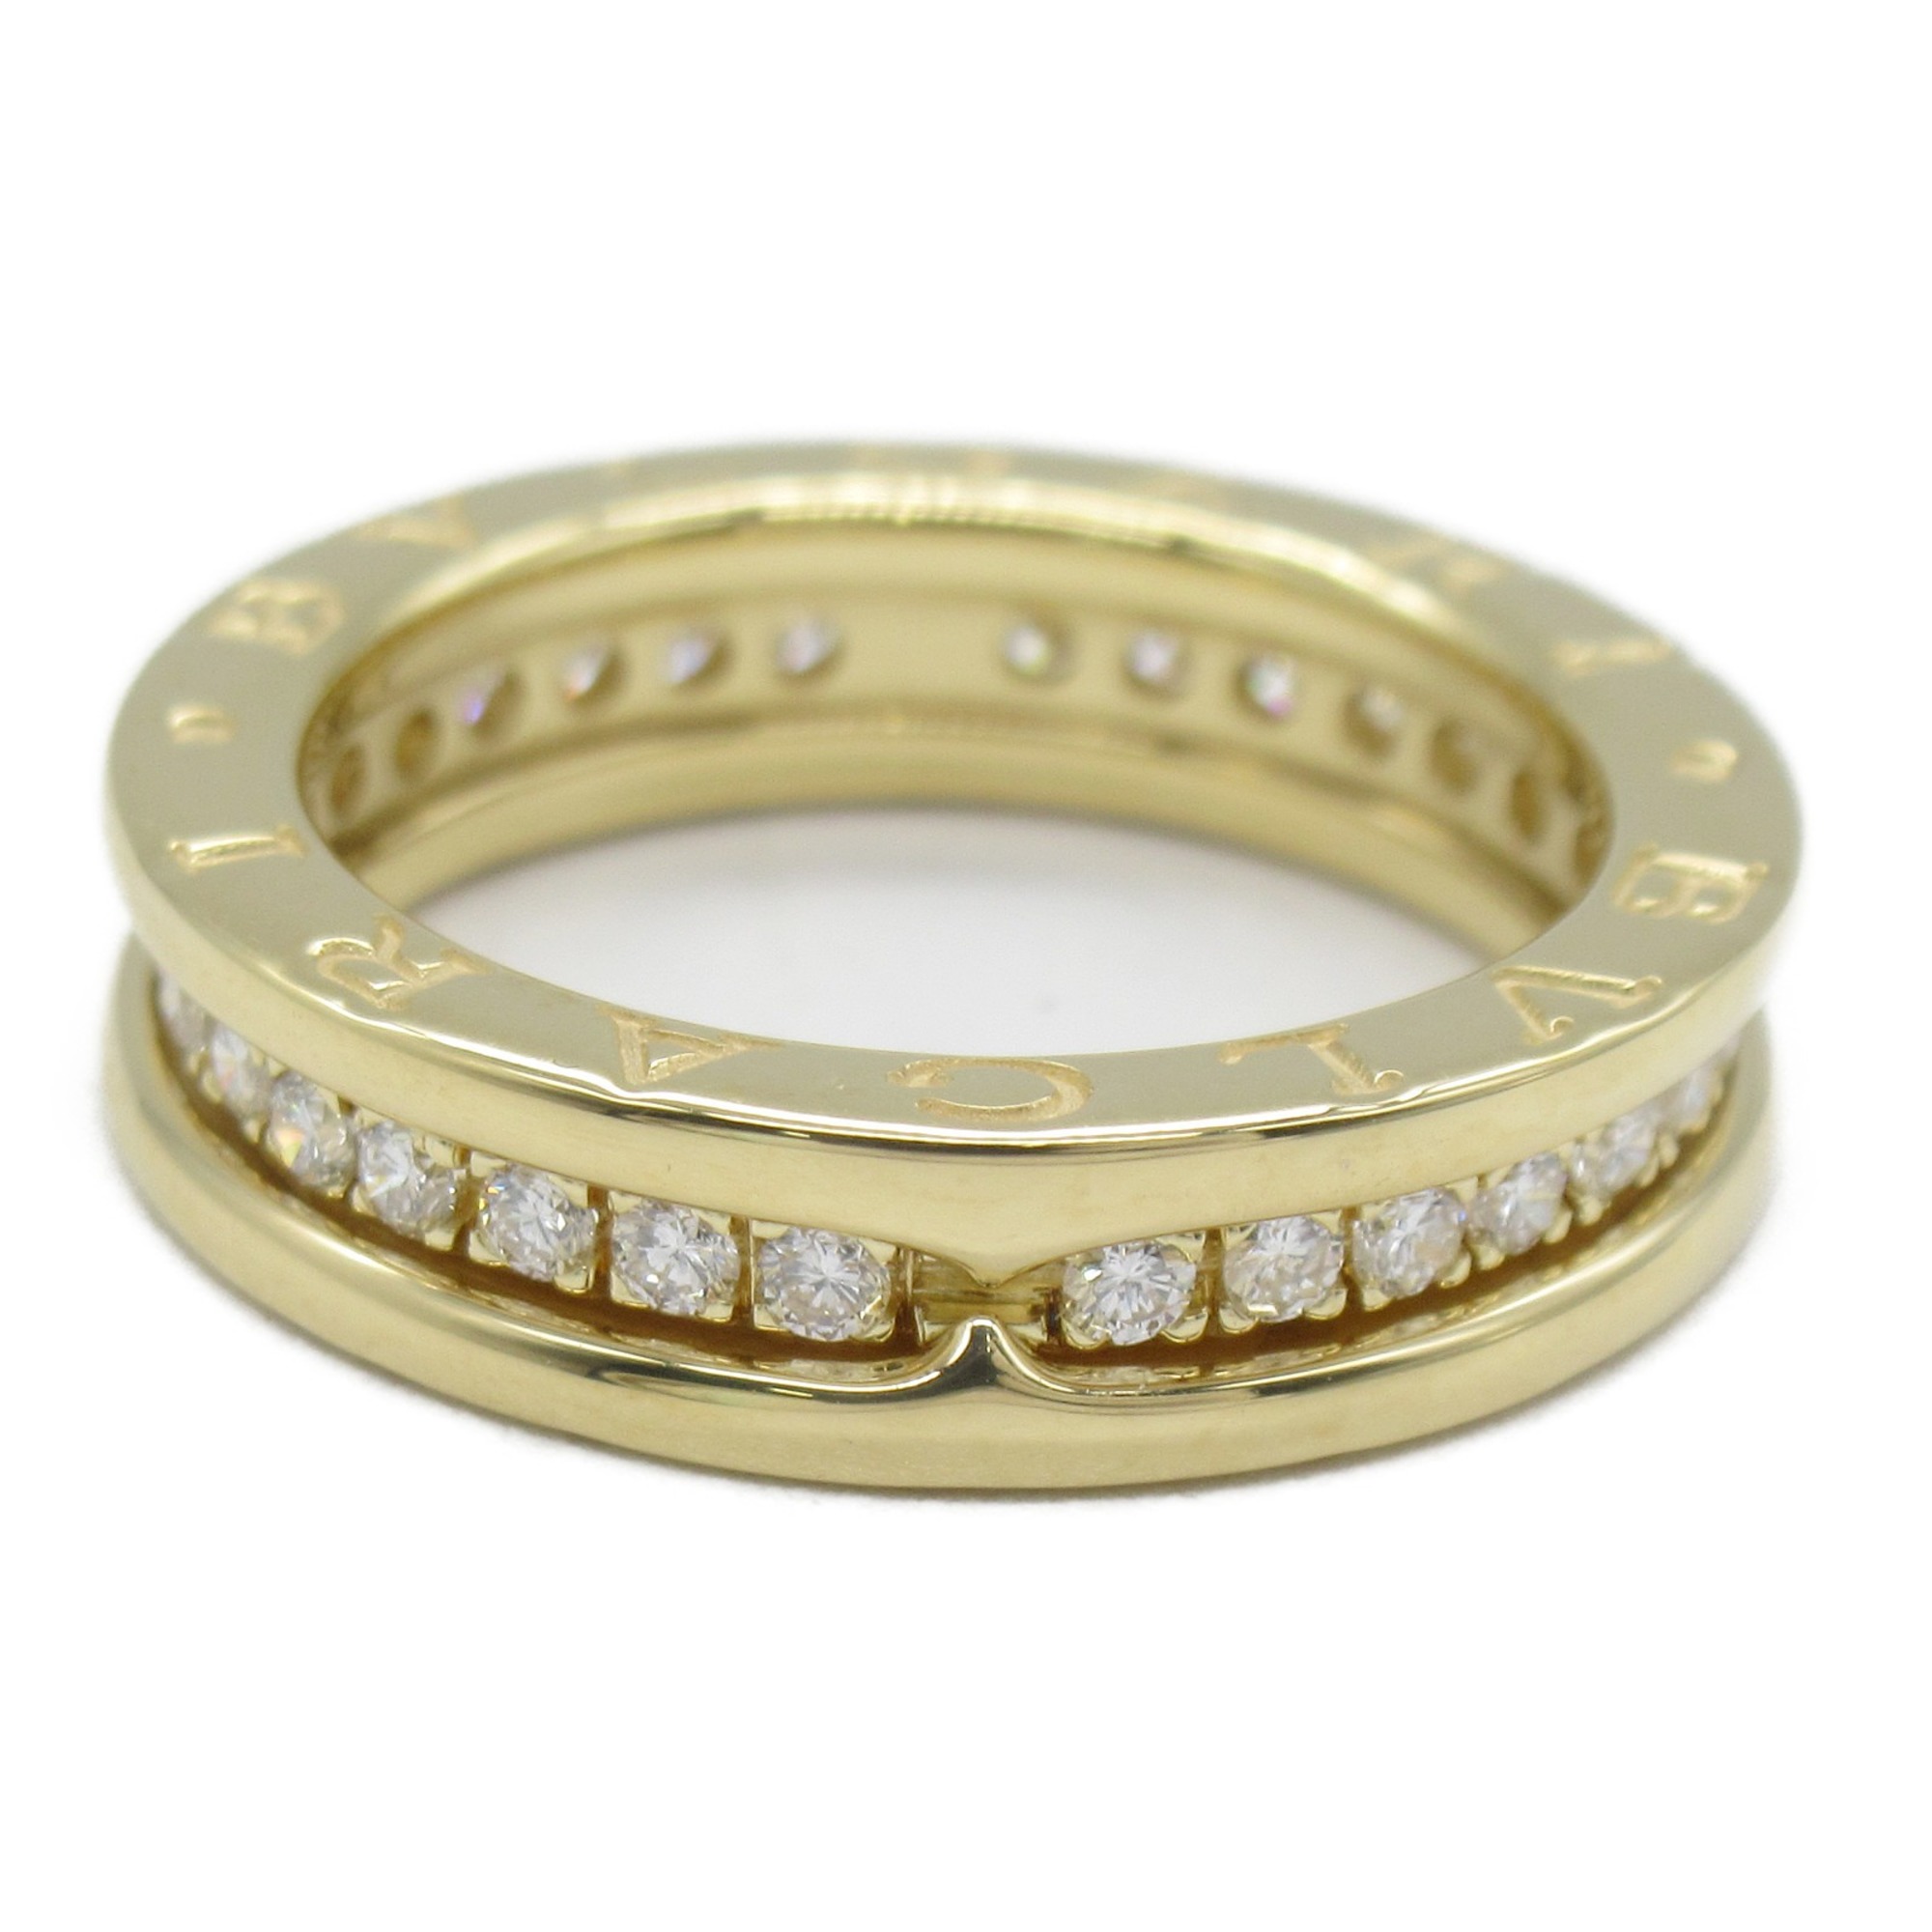 BVLGARI B-zero1 B zero one full diamond ring Ring Clear  K18 (Yellow Gold) Clear